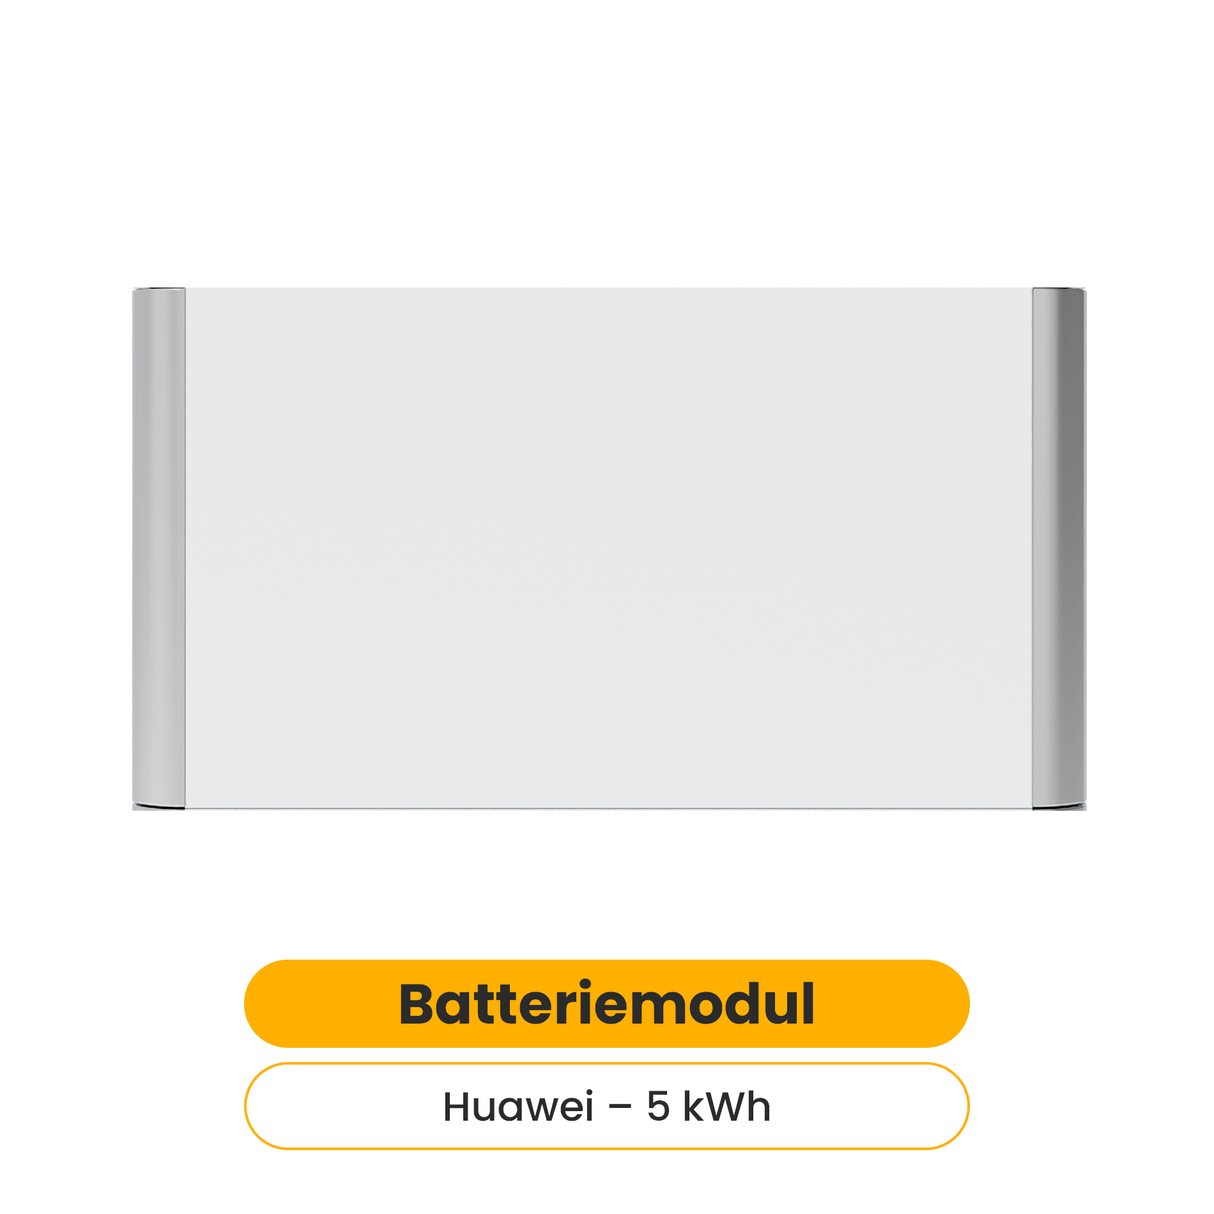 Huawei Batteriemodul LUNA2000-5-E0 5 kWh